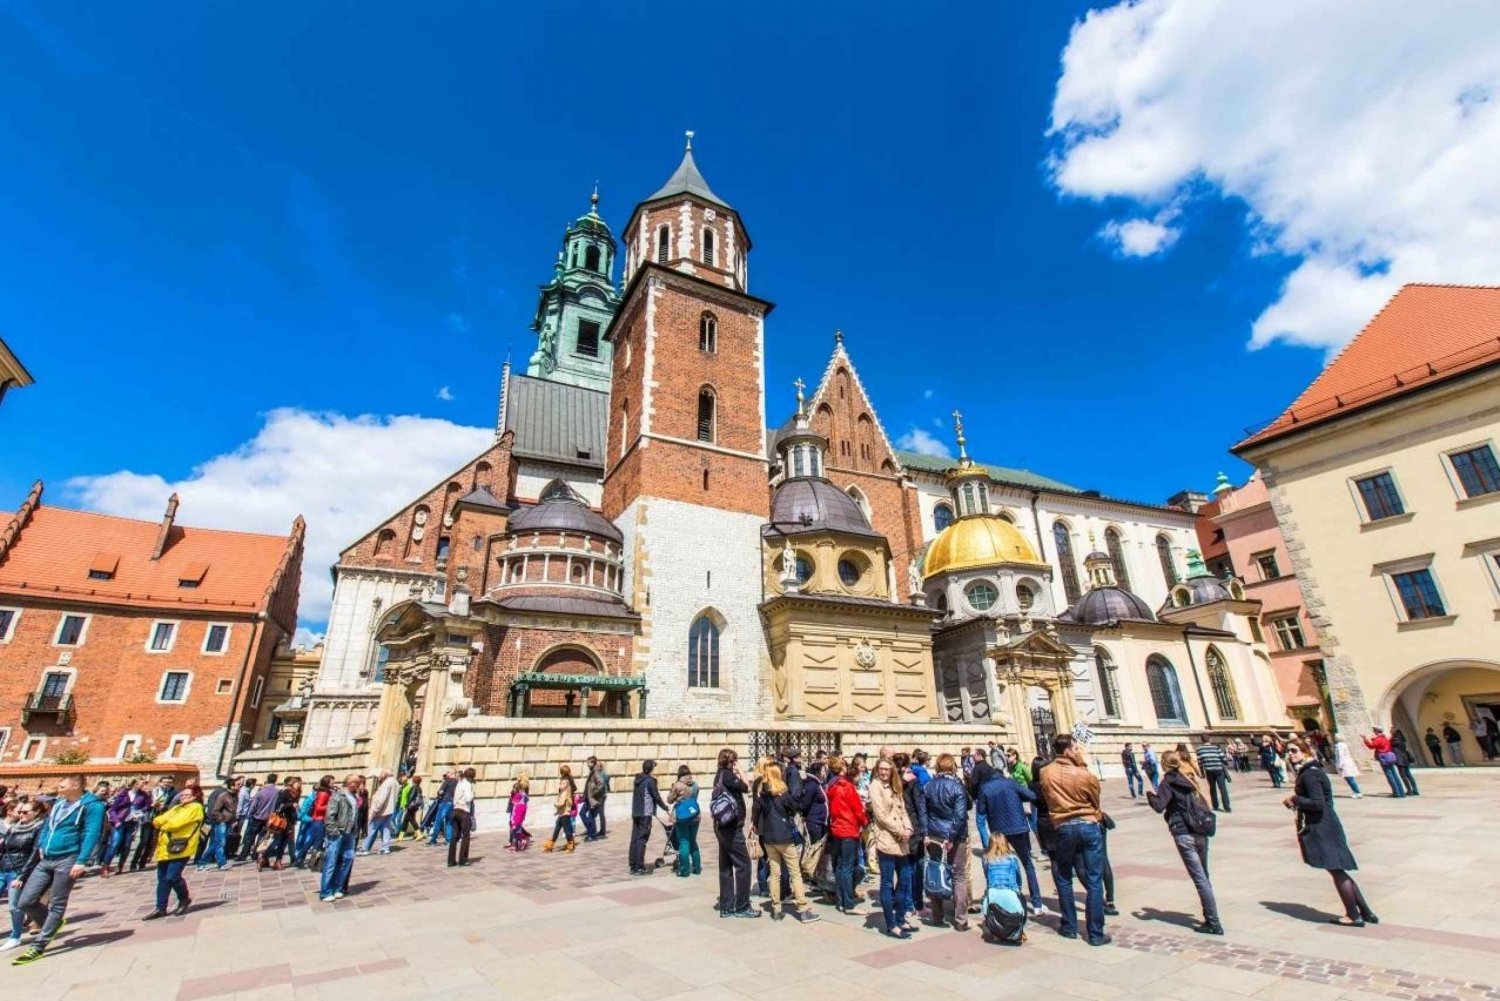 Krakau: Königliche Kathedrale, Marienkirche & Rynek Underground